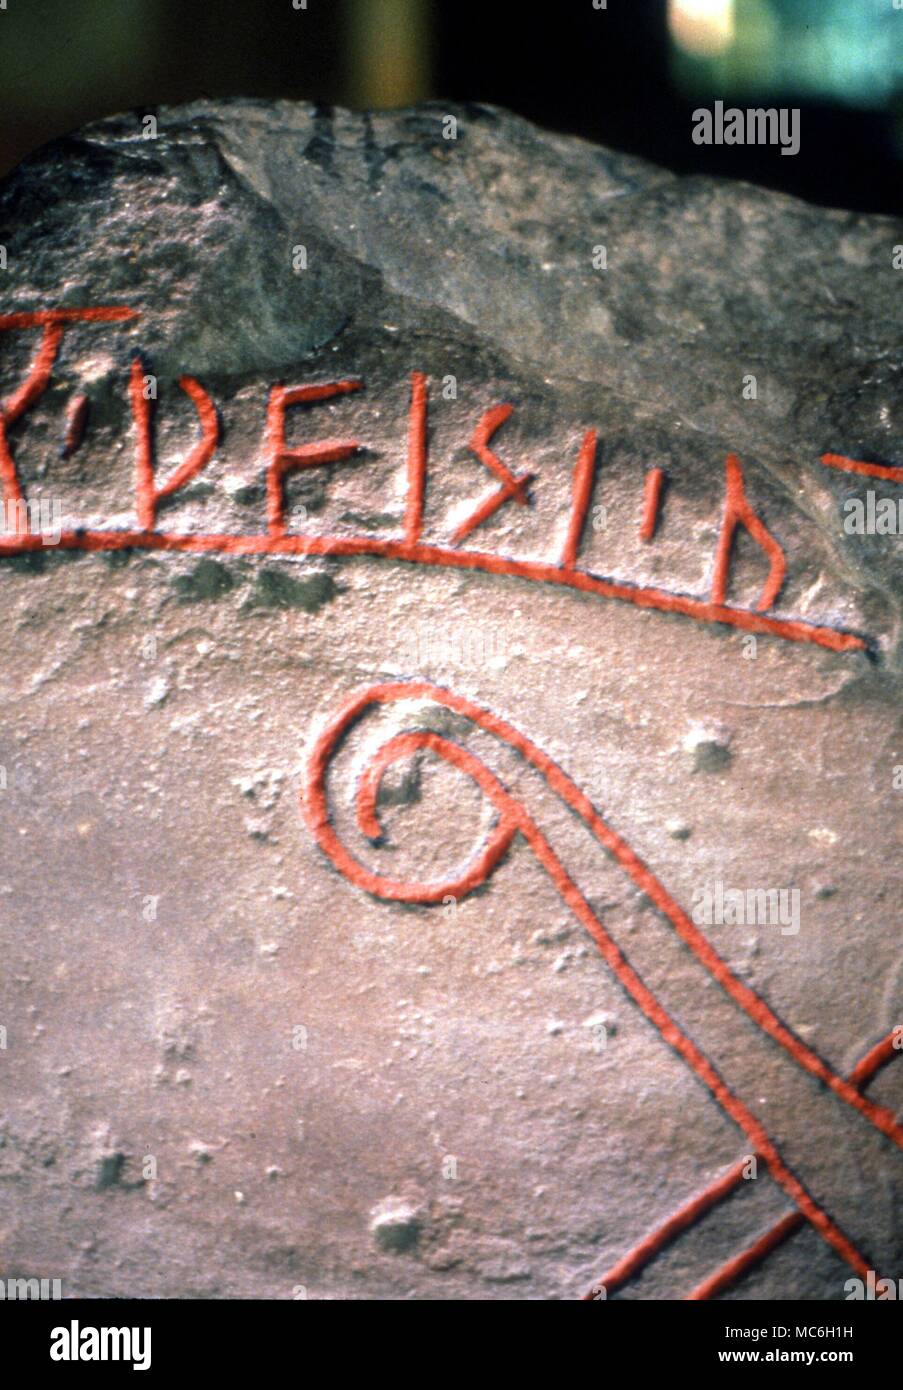 Details von Runen auf Skandinavischen rune Stein Lager interlace Drachen - Kopf Muster und zahlreiche inscripton Runen. Das Ashmolean Museum, Oxford Stockfoto